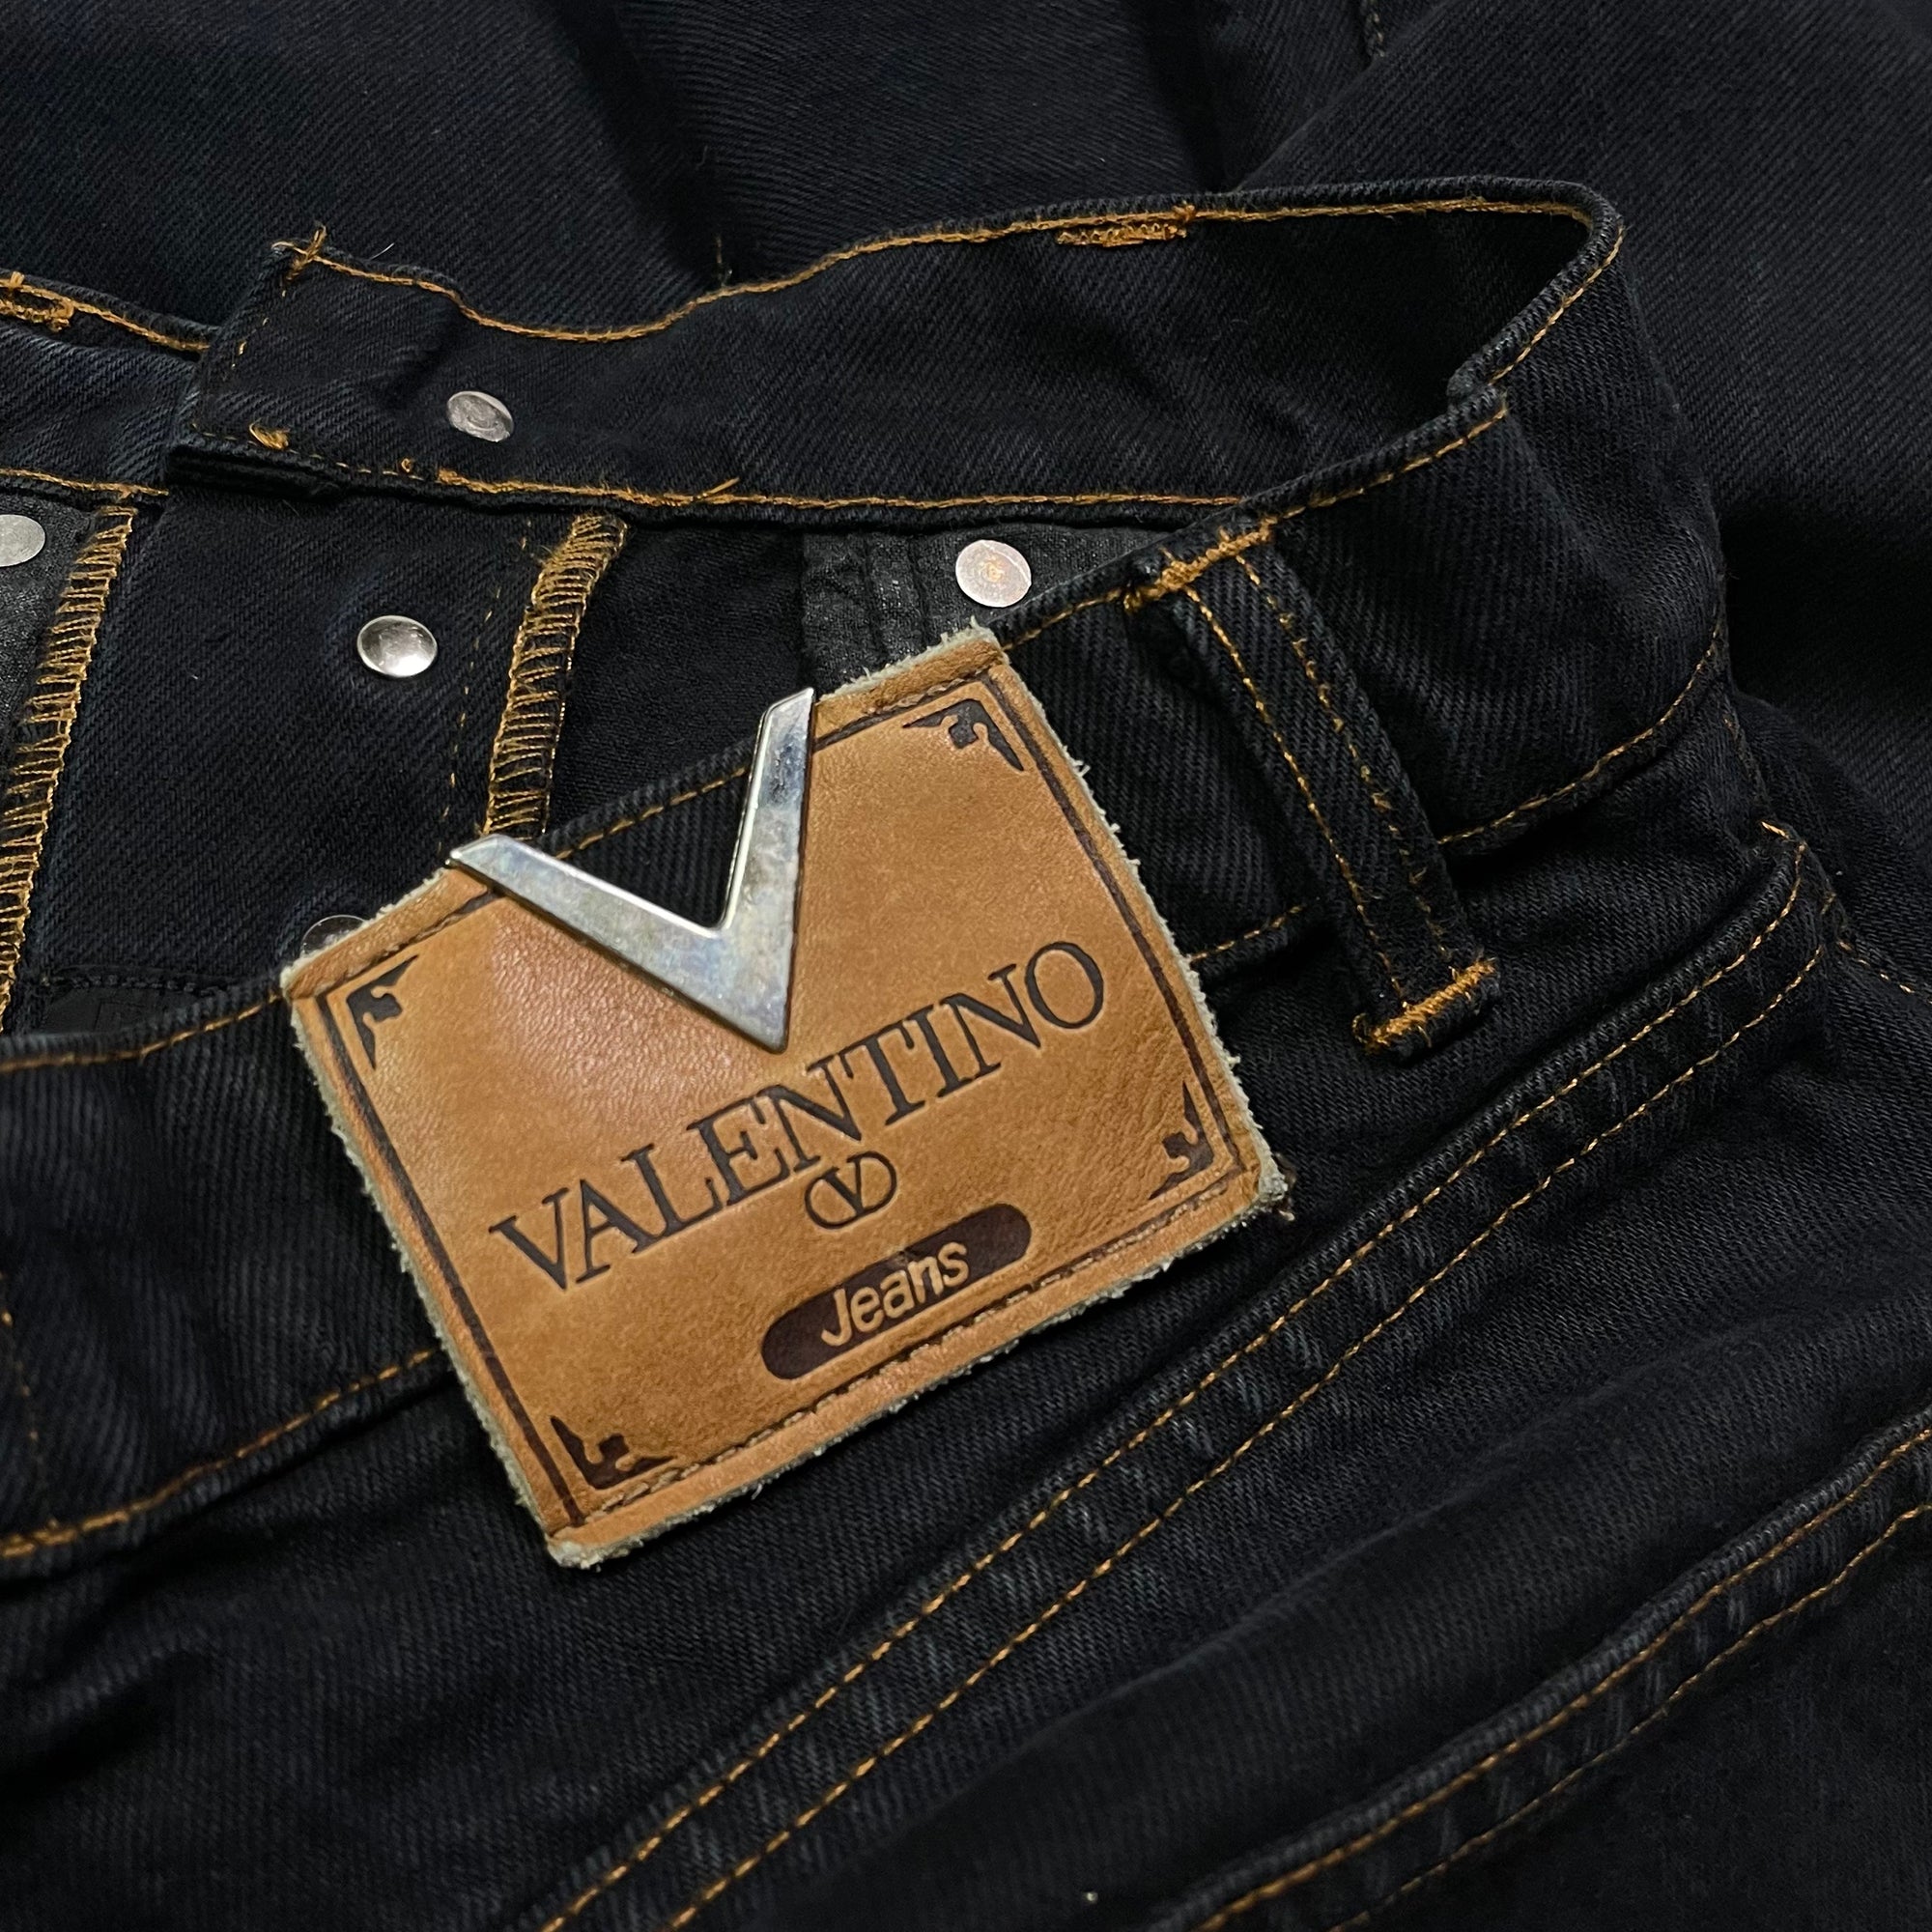 Pantalon en Denim - Valentino - Noir